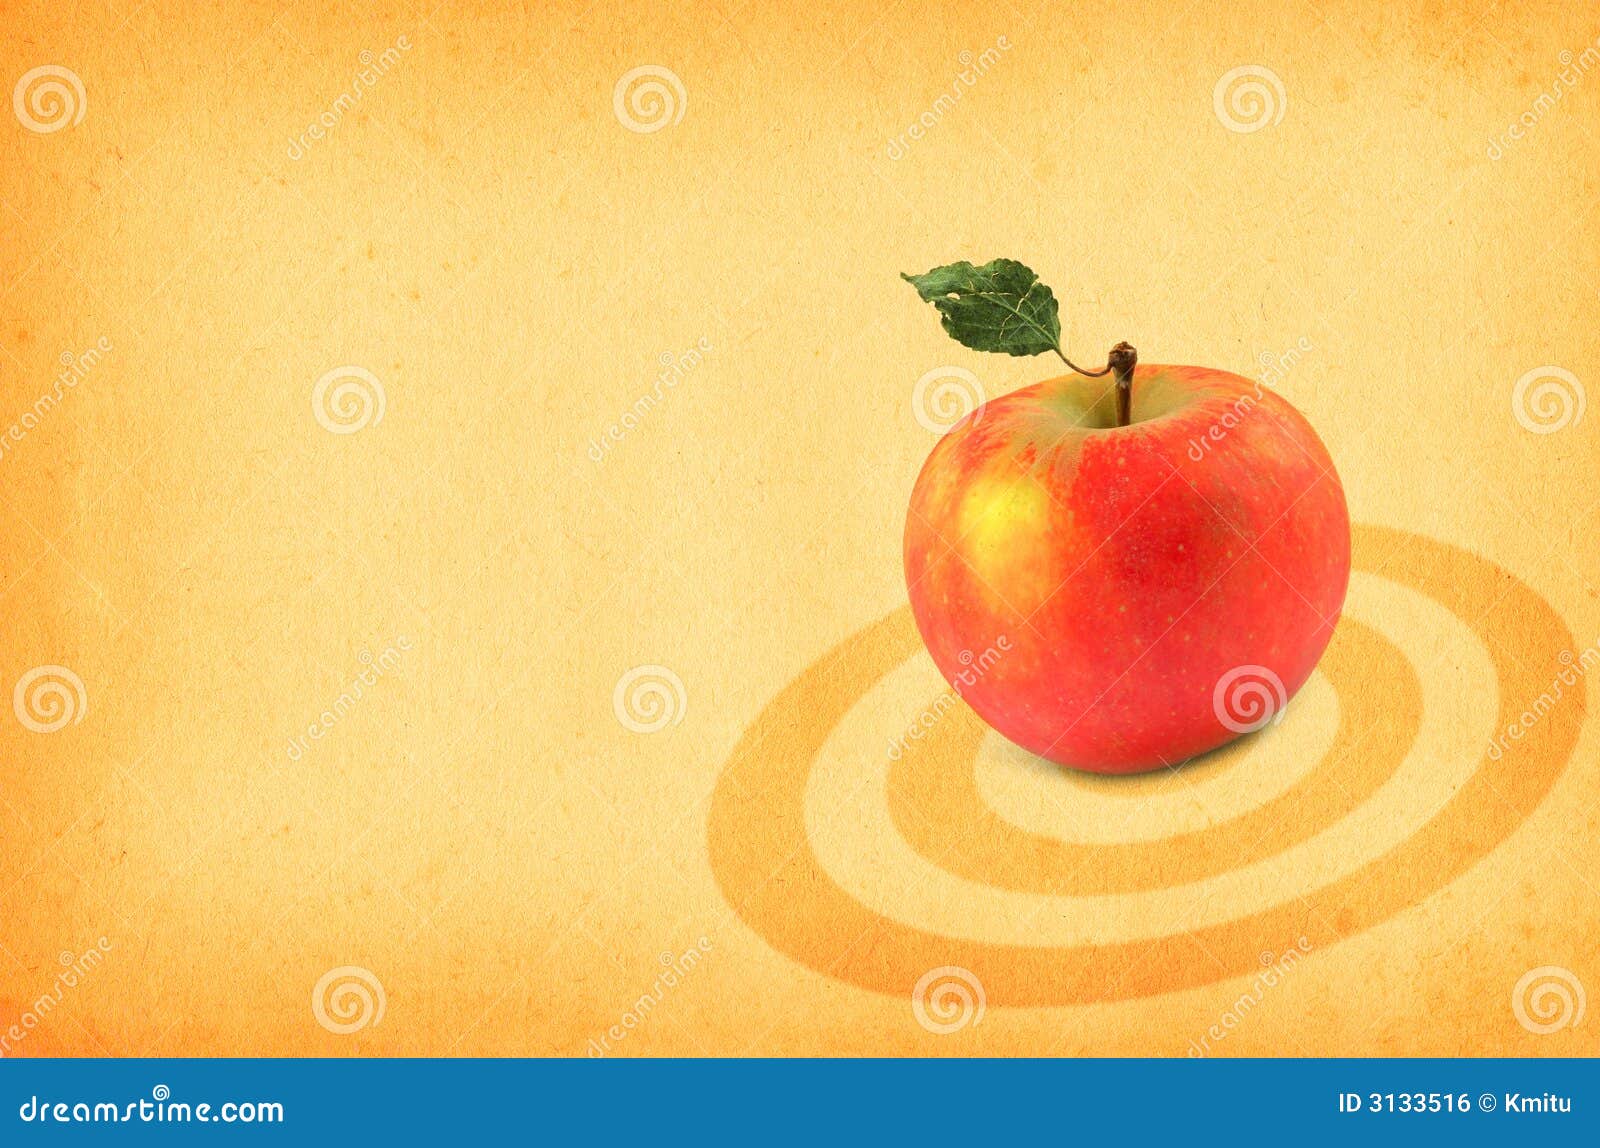 Red apple logo HD wallpapers  Pxfuel